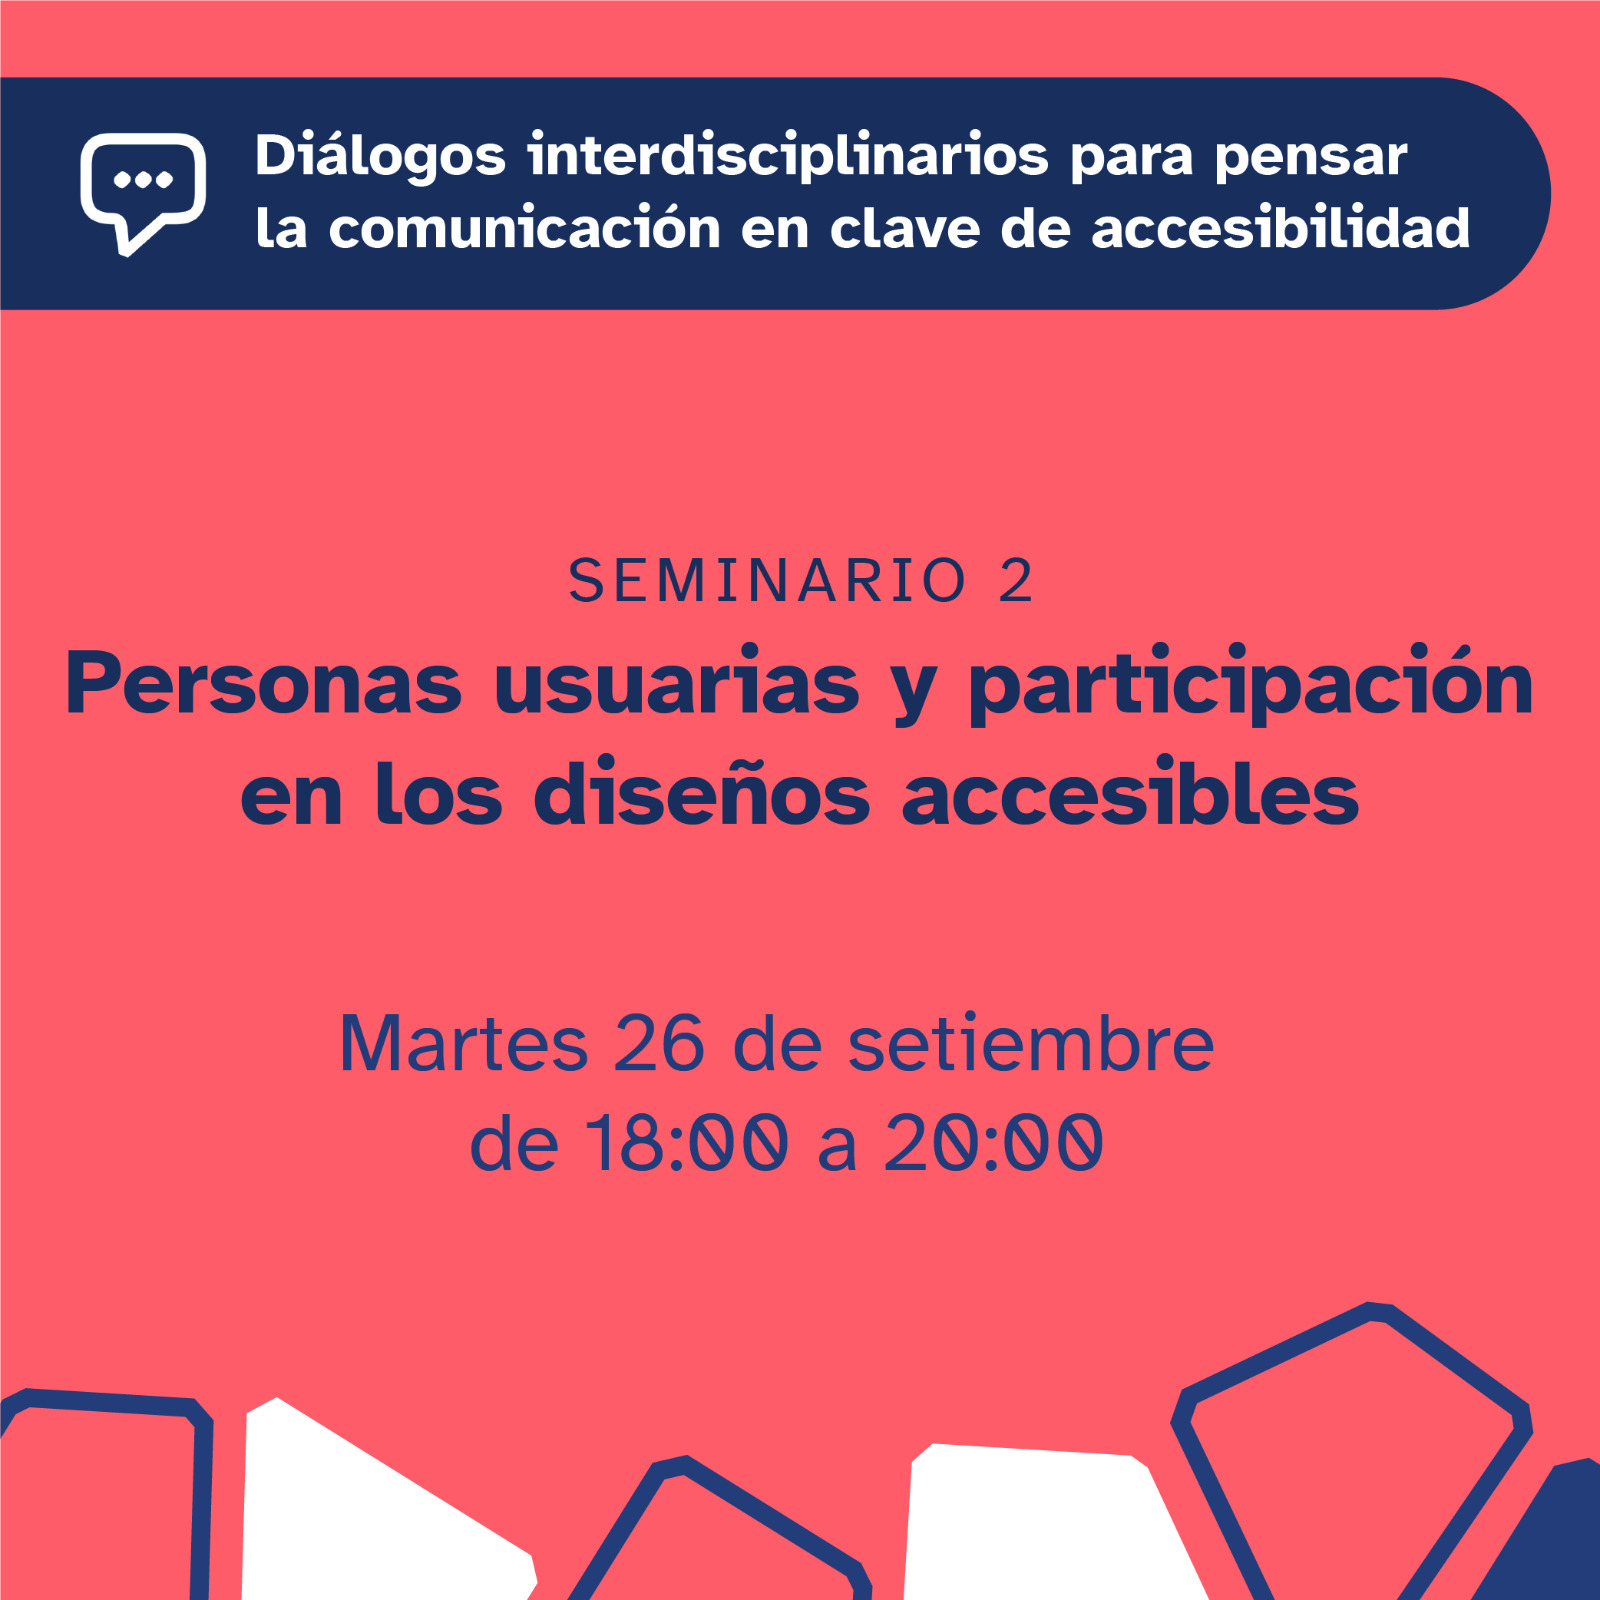 Afiche. Sobre un fondo rosado el texto "Seminario 2. Personas usuarias y participación en los diseños accesibles". Debajo fecha y hora. Un entramado azul y blanco decora la imagen.